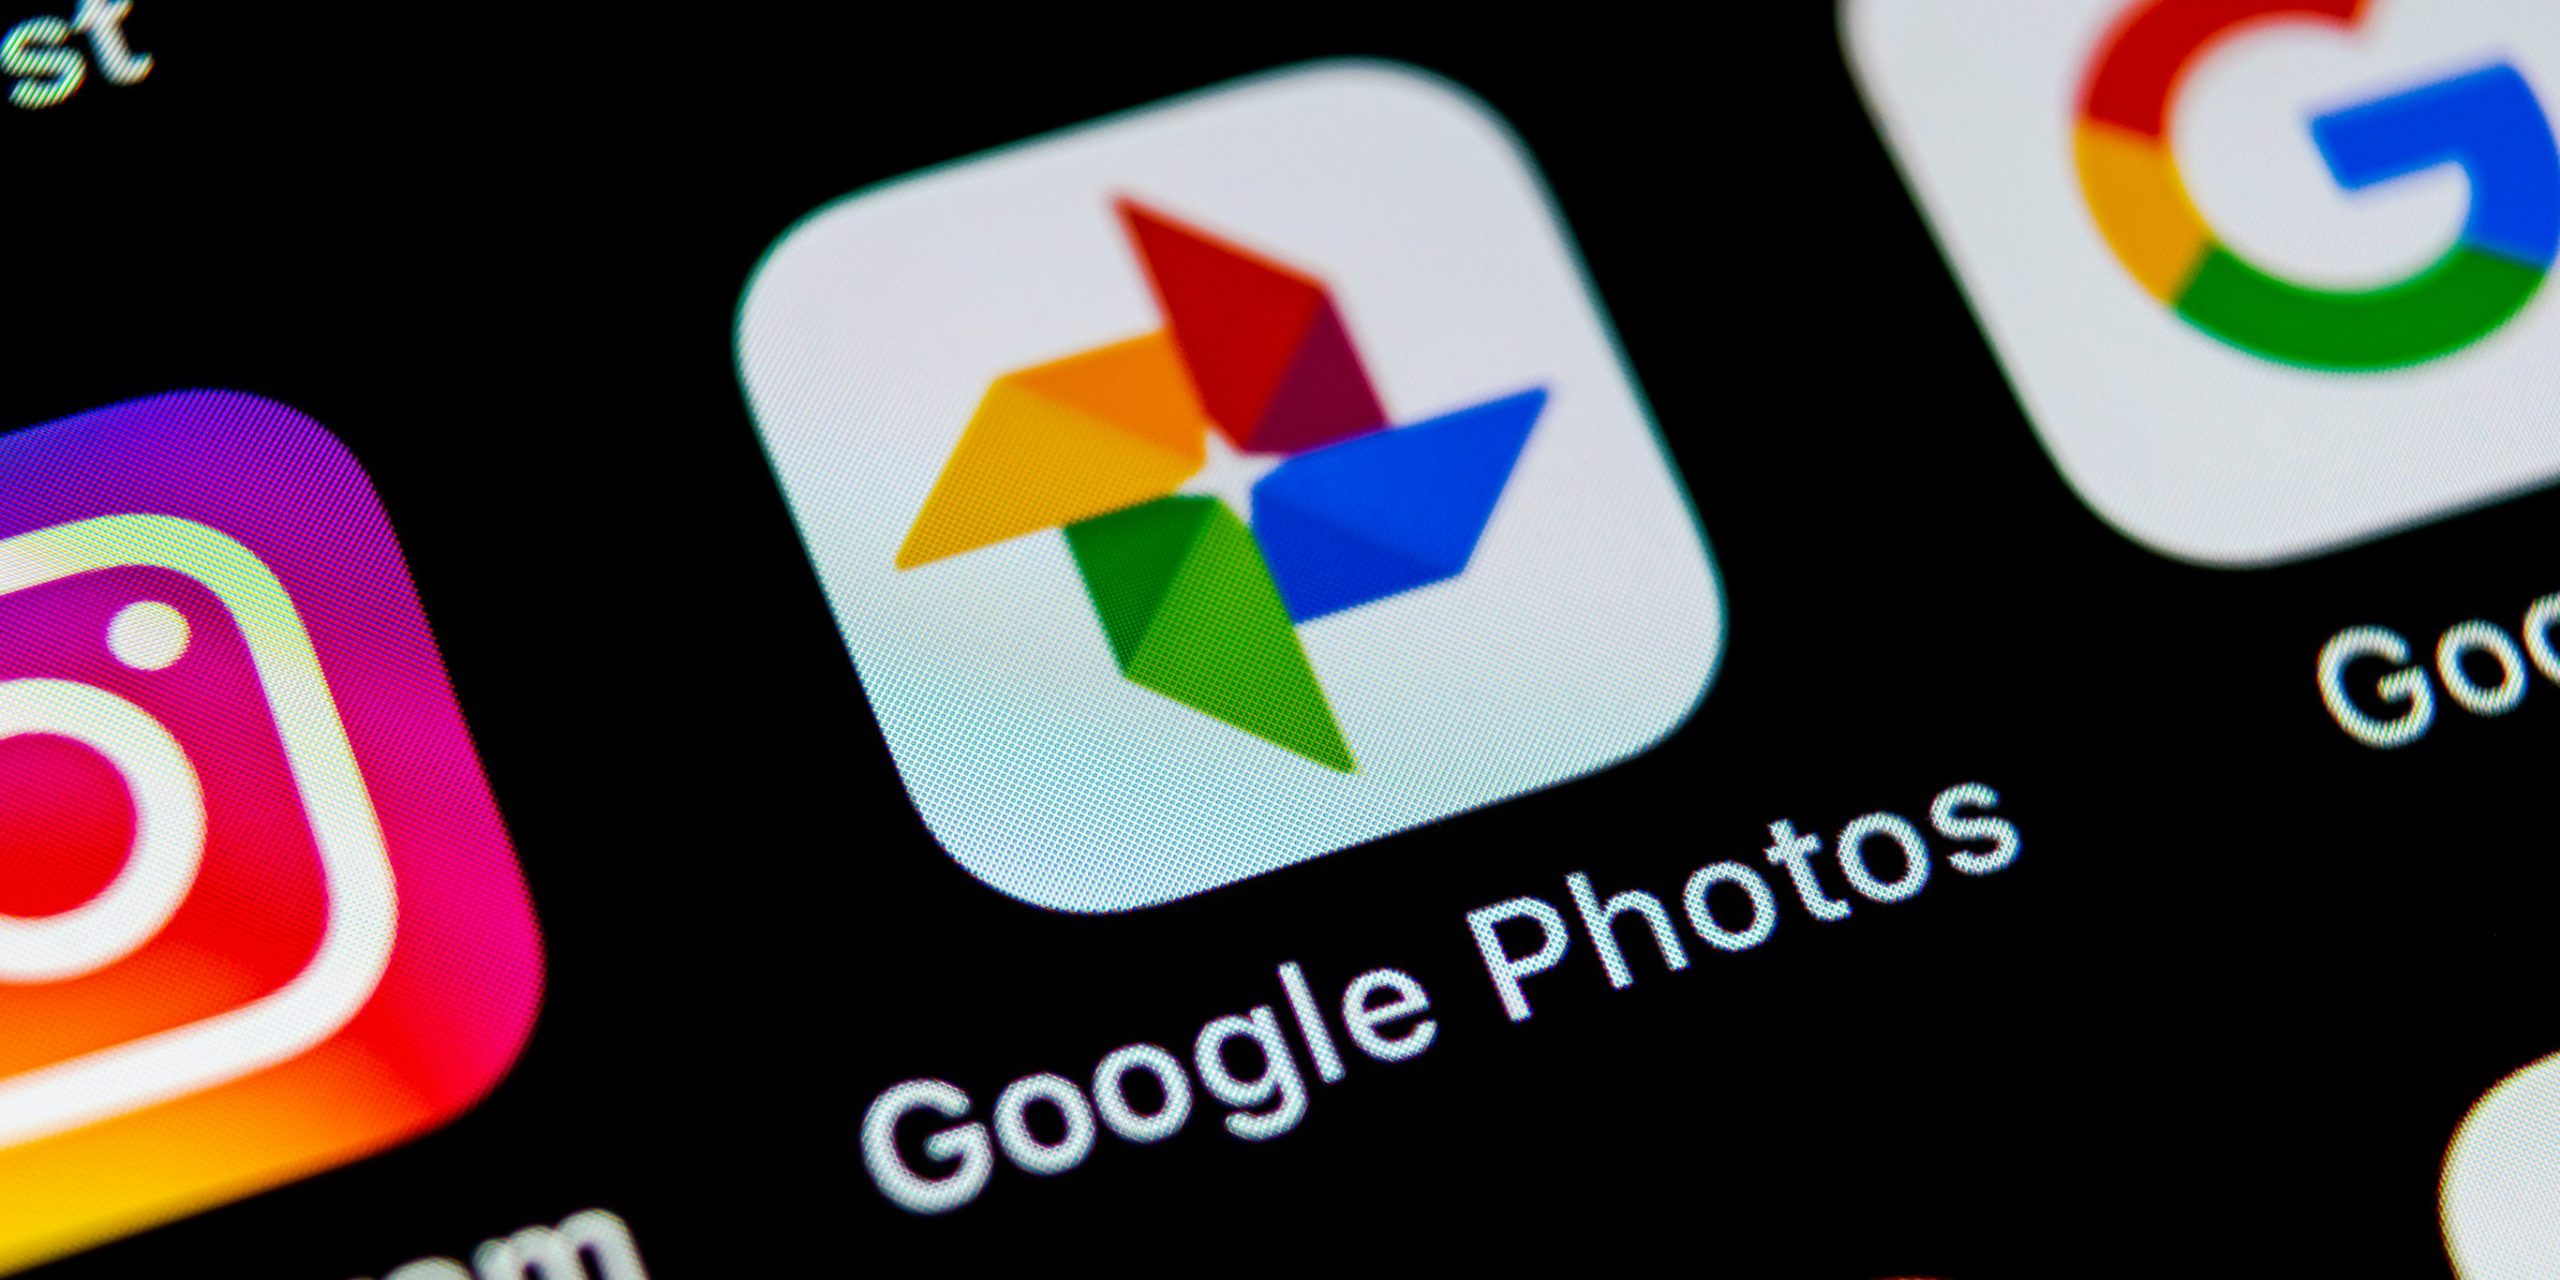 Chỉ trong 4 năm, Google Photos đã chạm mốc 1 tỷ người dùng